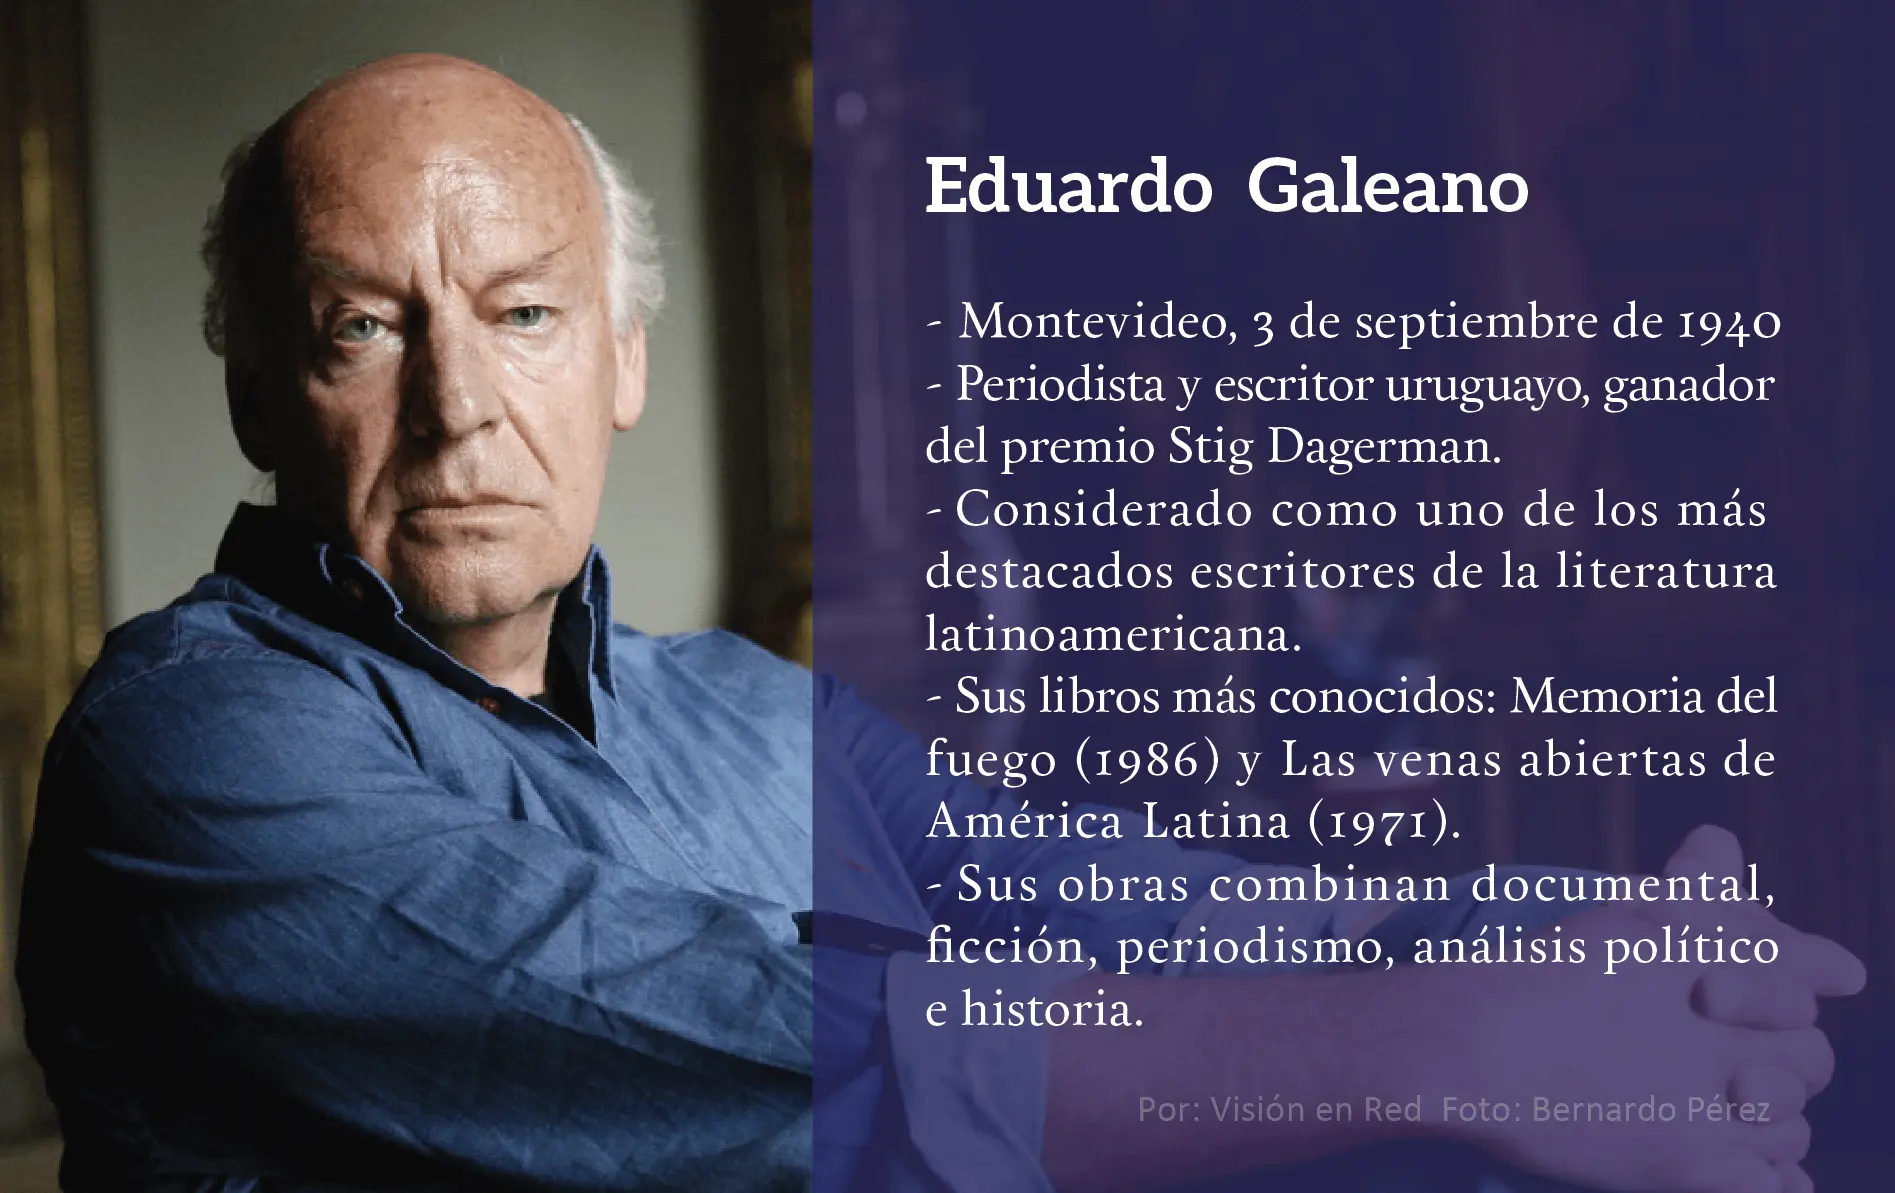 eduardo galeano biografia resumen - Qué podemos decir de Eduardo Galeano